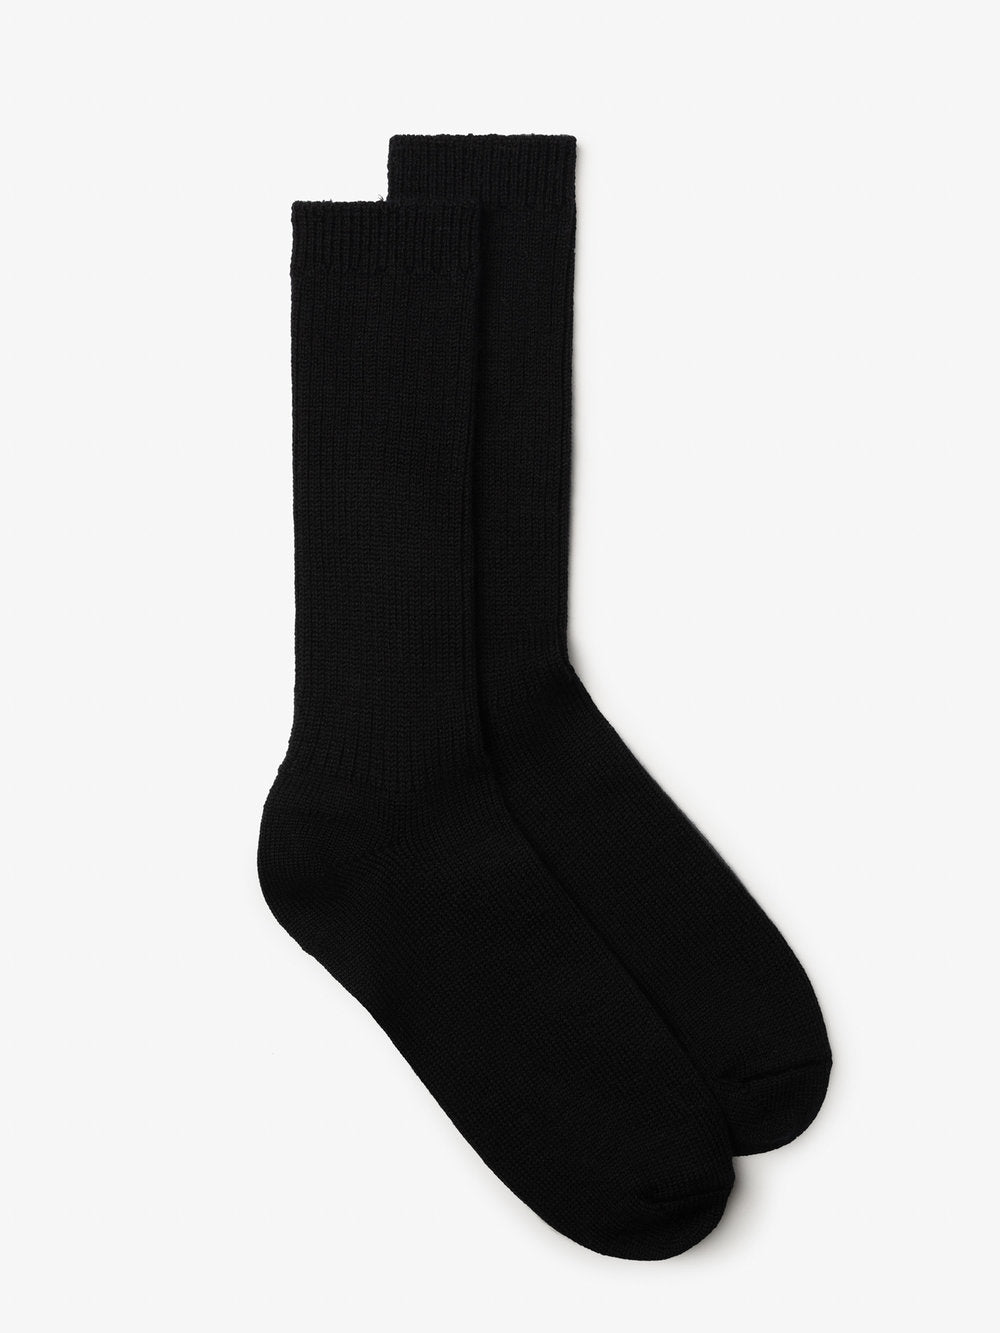 Milo & Dexter Merino socks in Black Fall 23/24